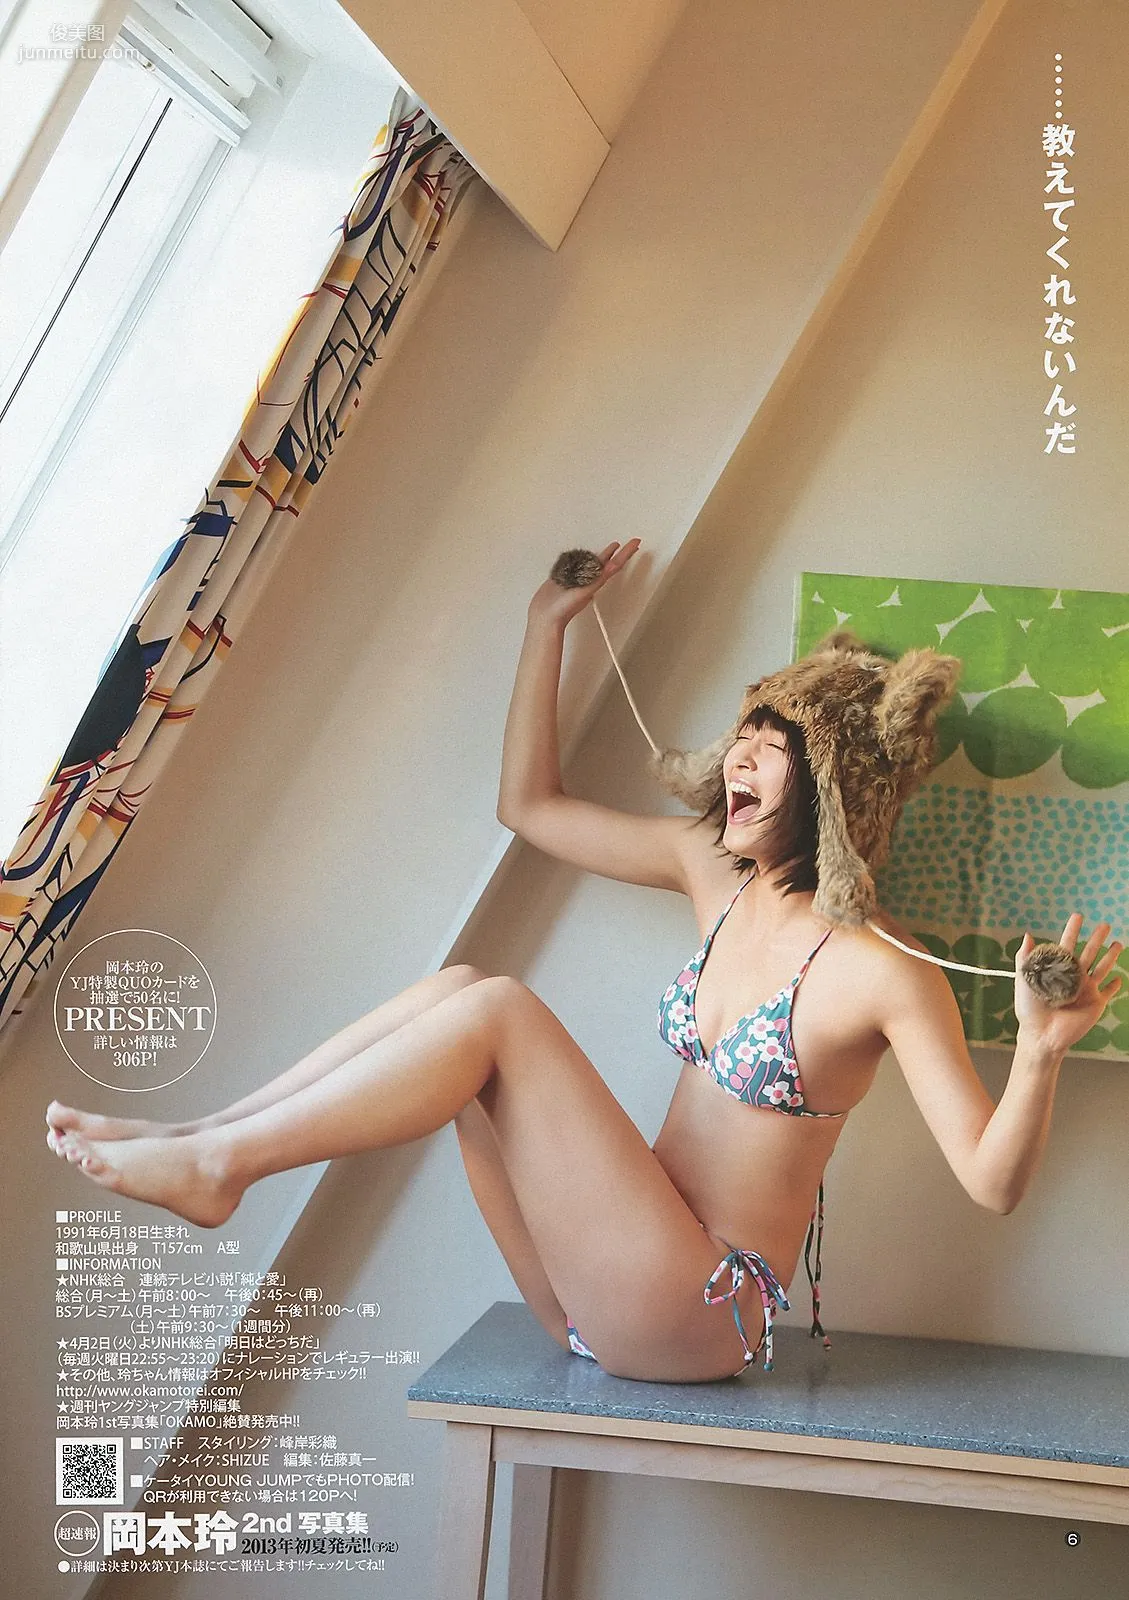 岡本玲 彩夢 [Weekly Young Jump] 2013年No.14 写真杂志7